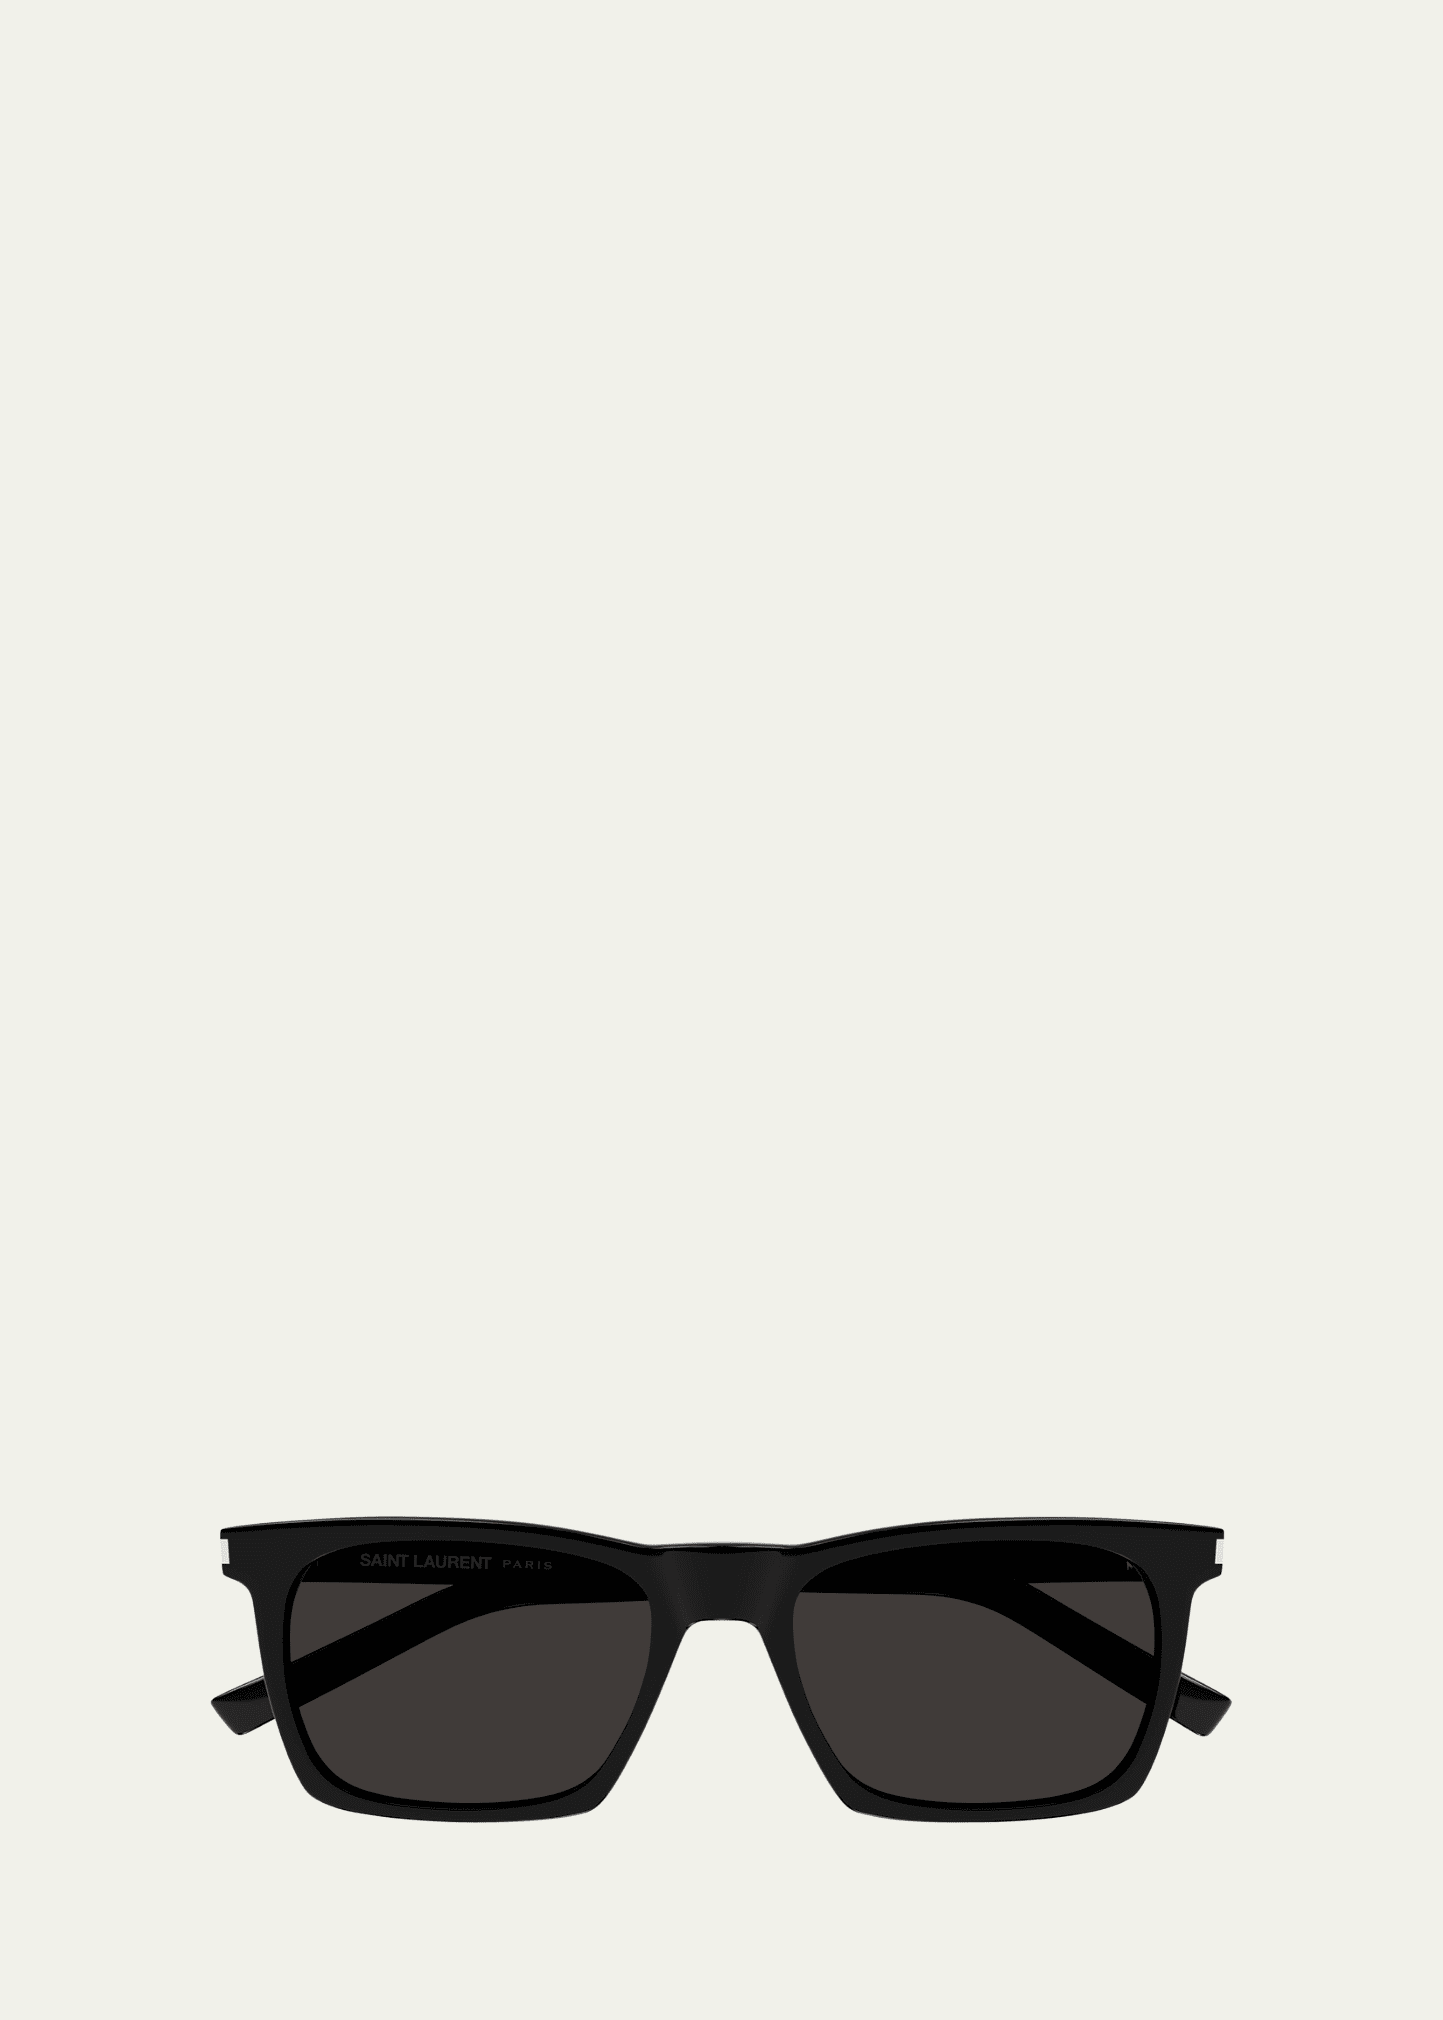 Saint Laurent Men's Slim Acetate Rectangle Sunglasses In Black